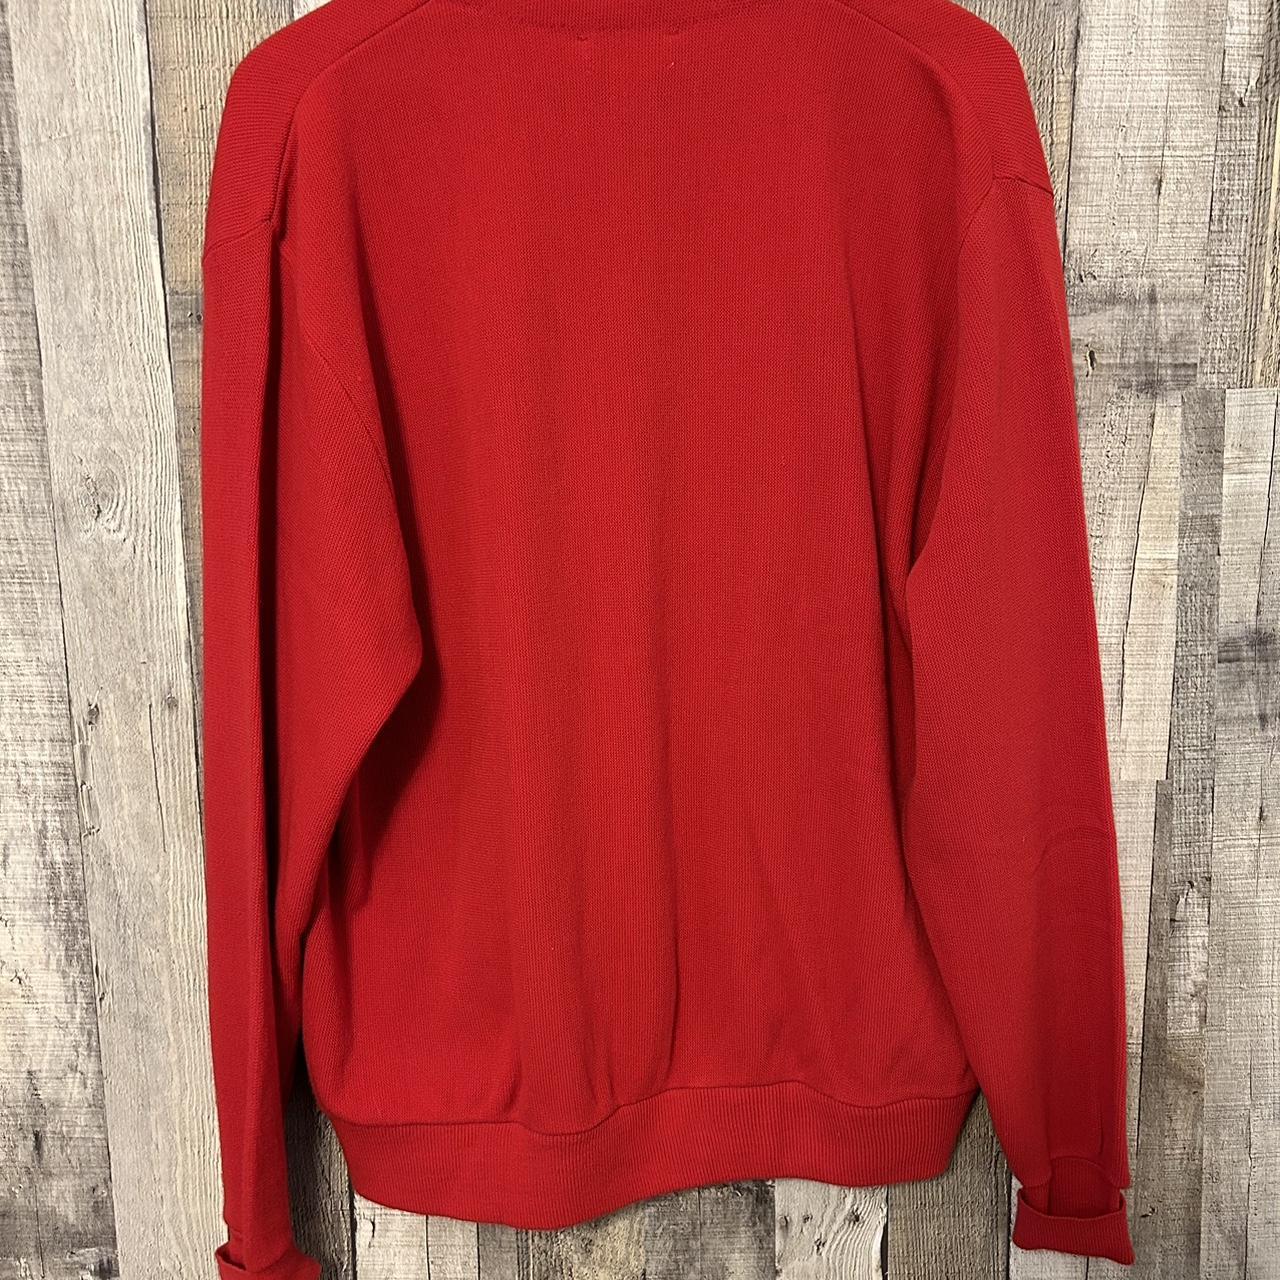 Vintage 1980’s Izod Cardigan Sweater Mens XL V-Neck... - Depop